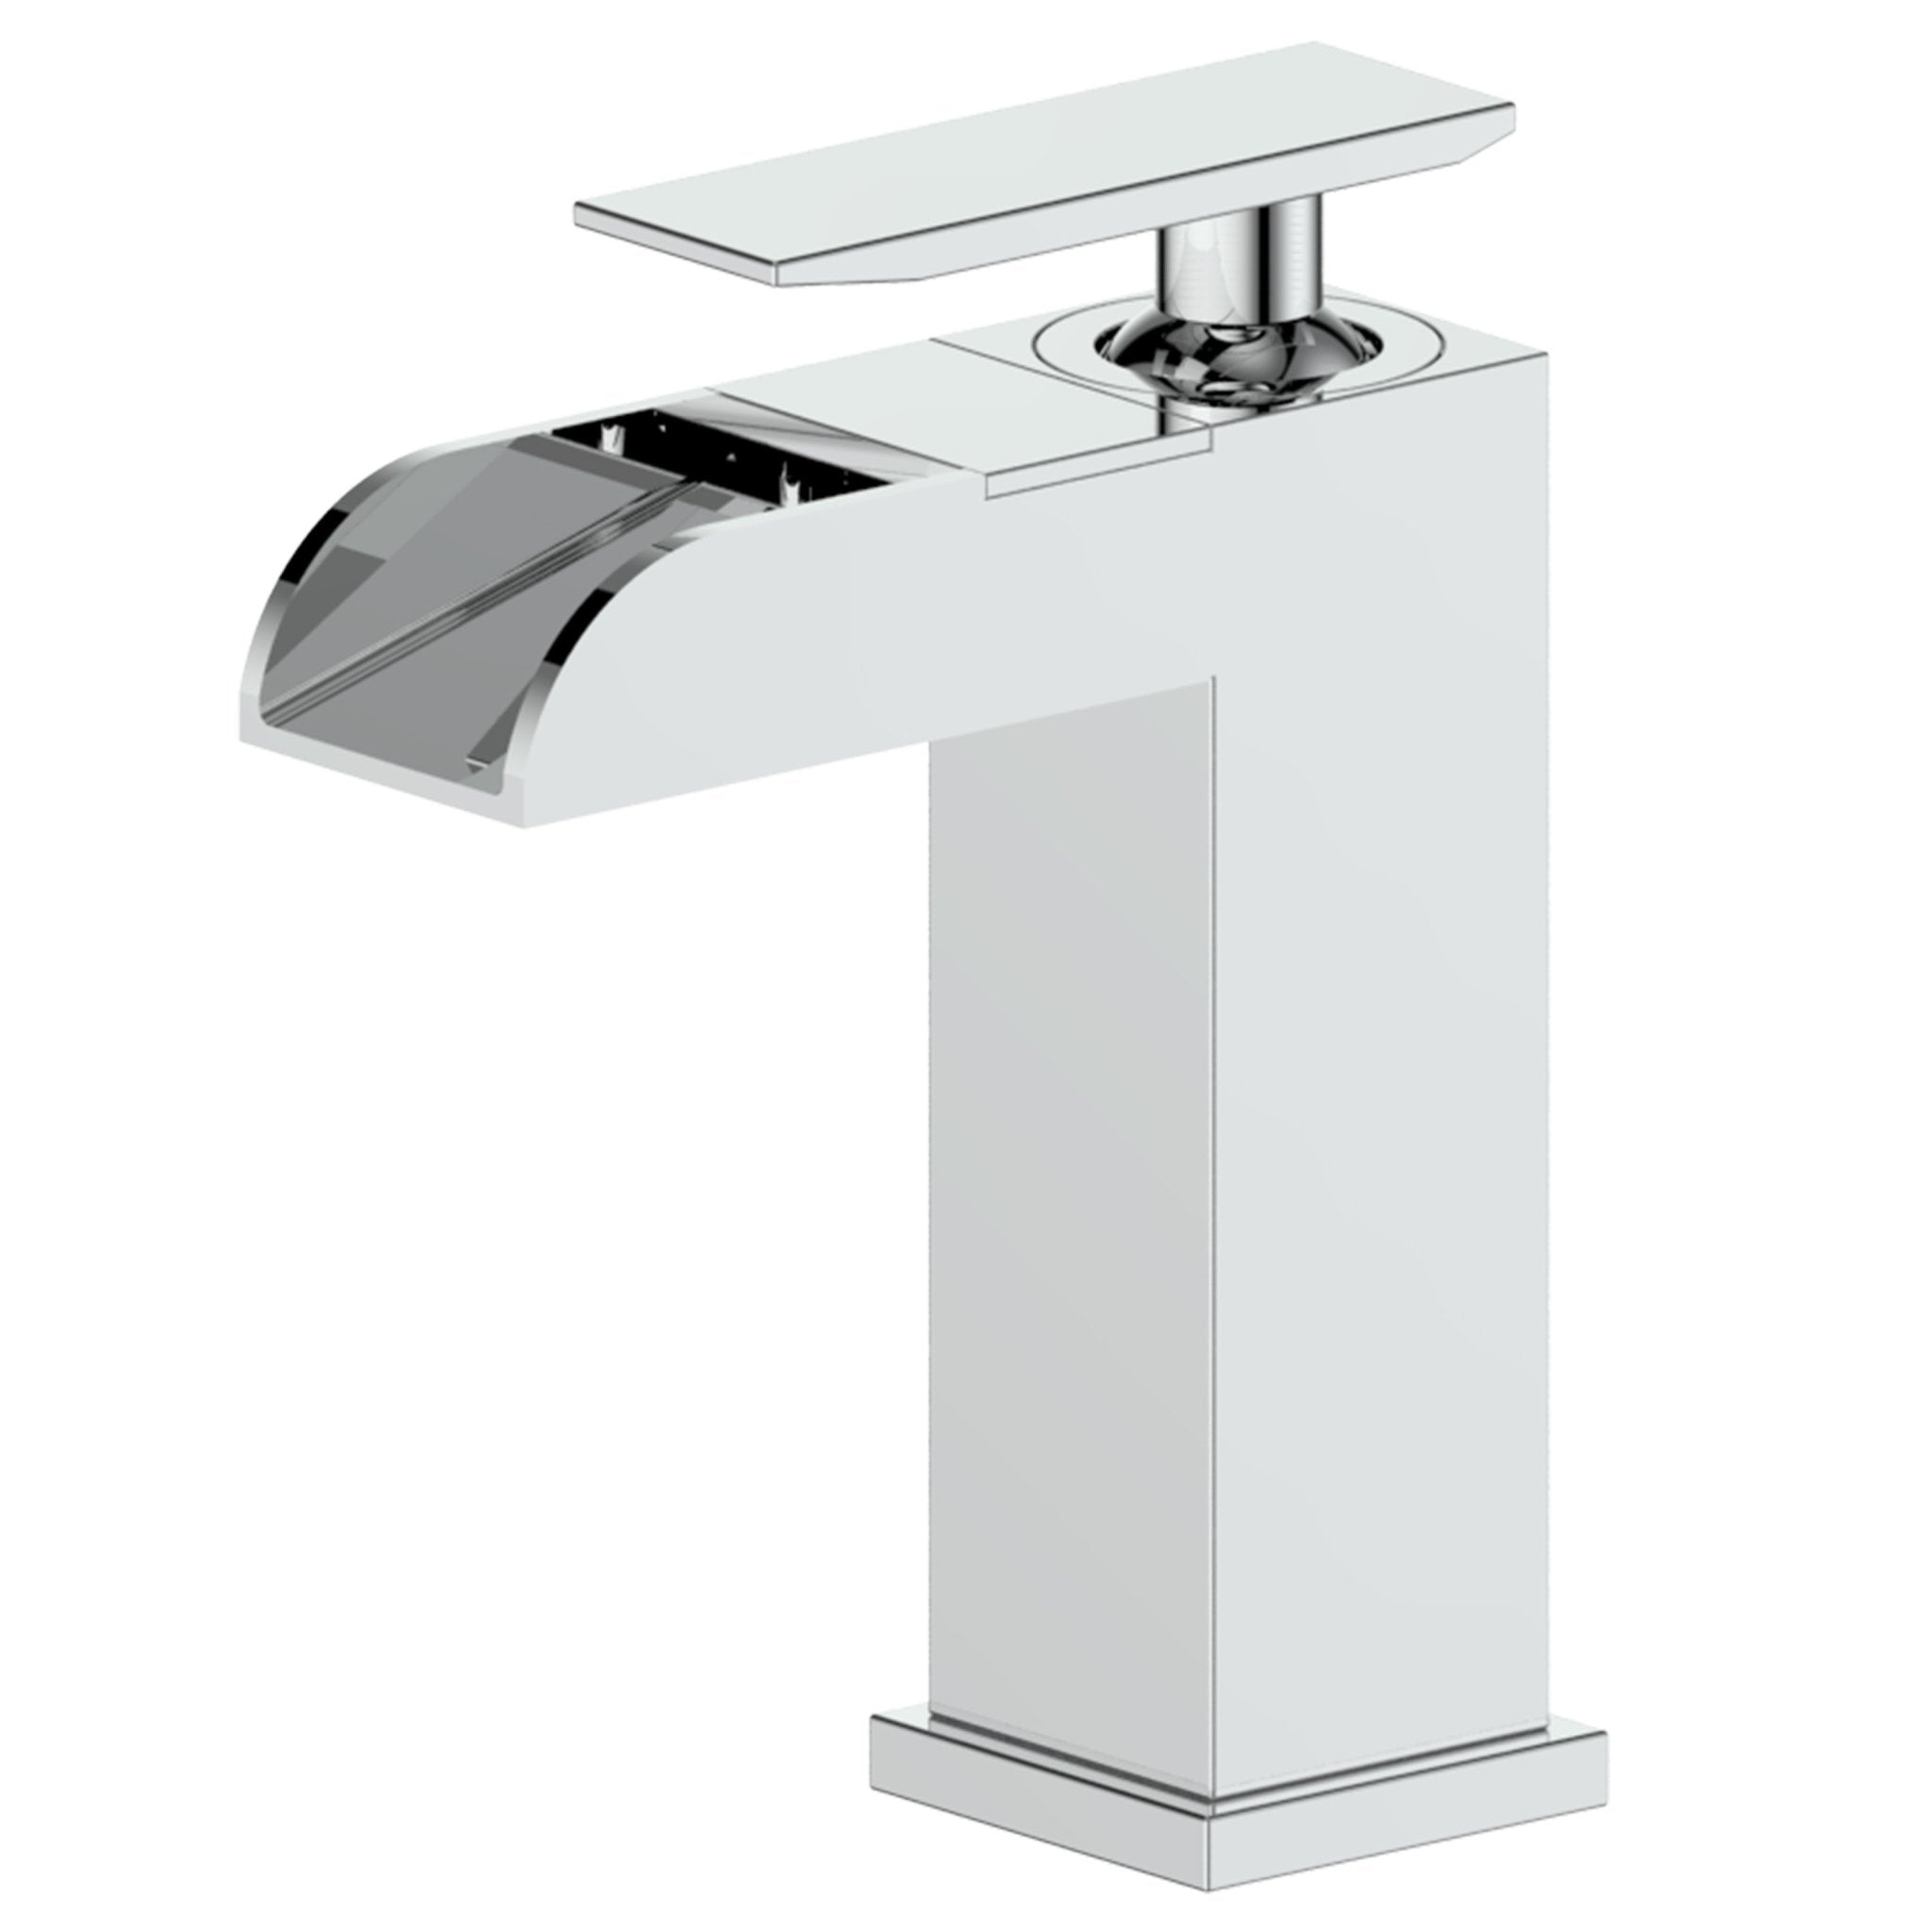 ZLINE Kitchen and Bath, ZLINE Homewood Bath Faucet in Chrome (HMD-BF-CH), HMD-BF-CH,